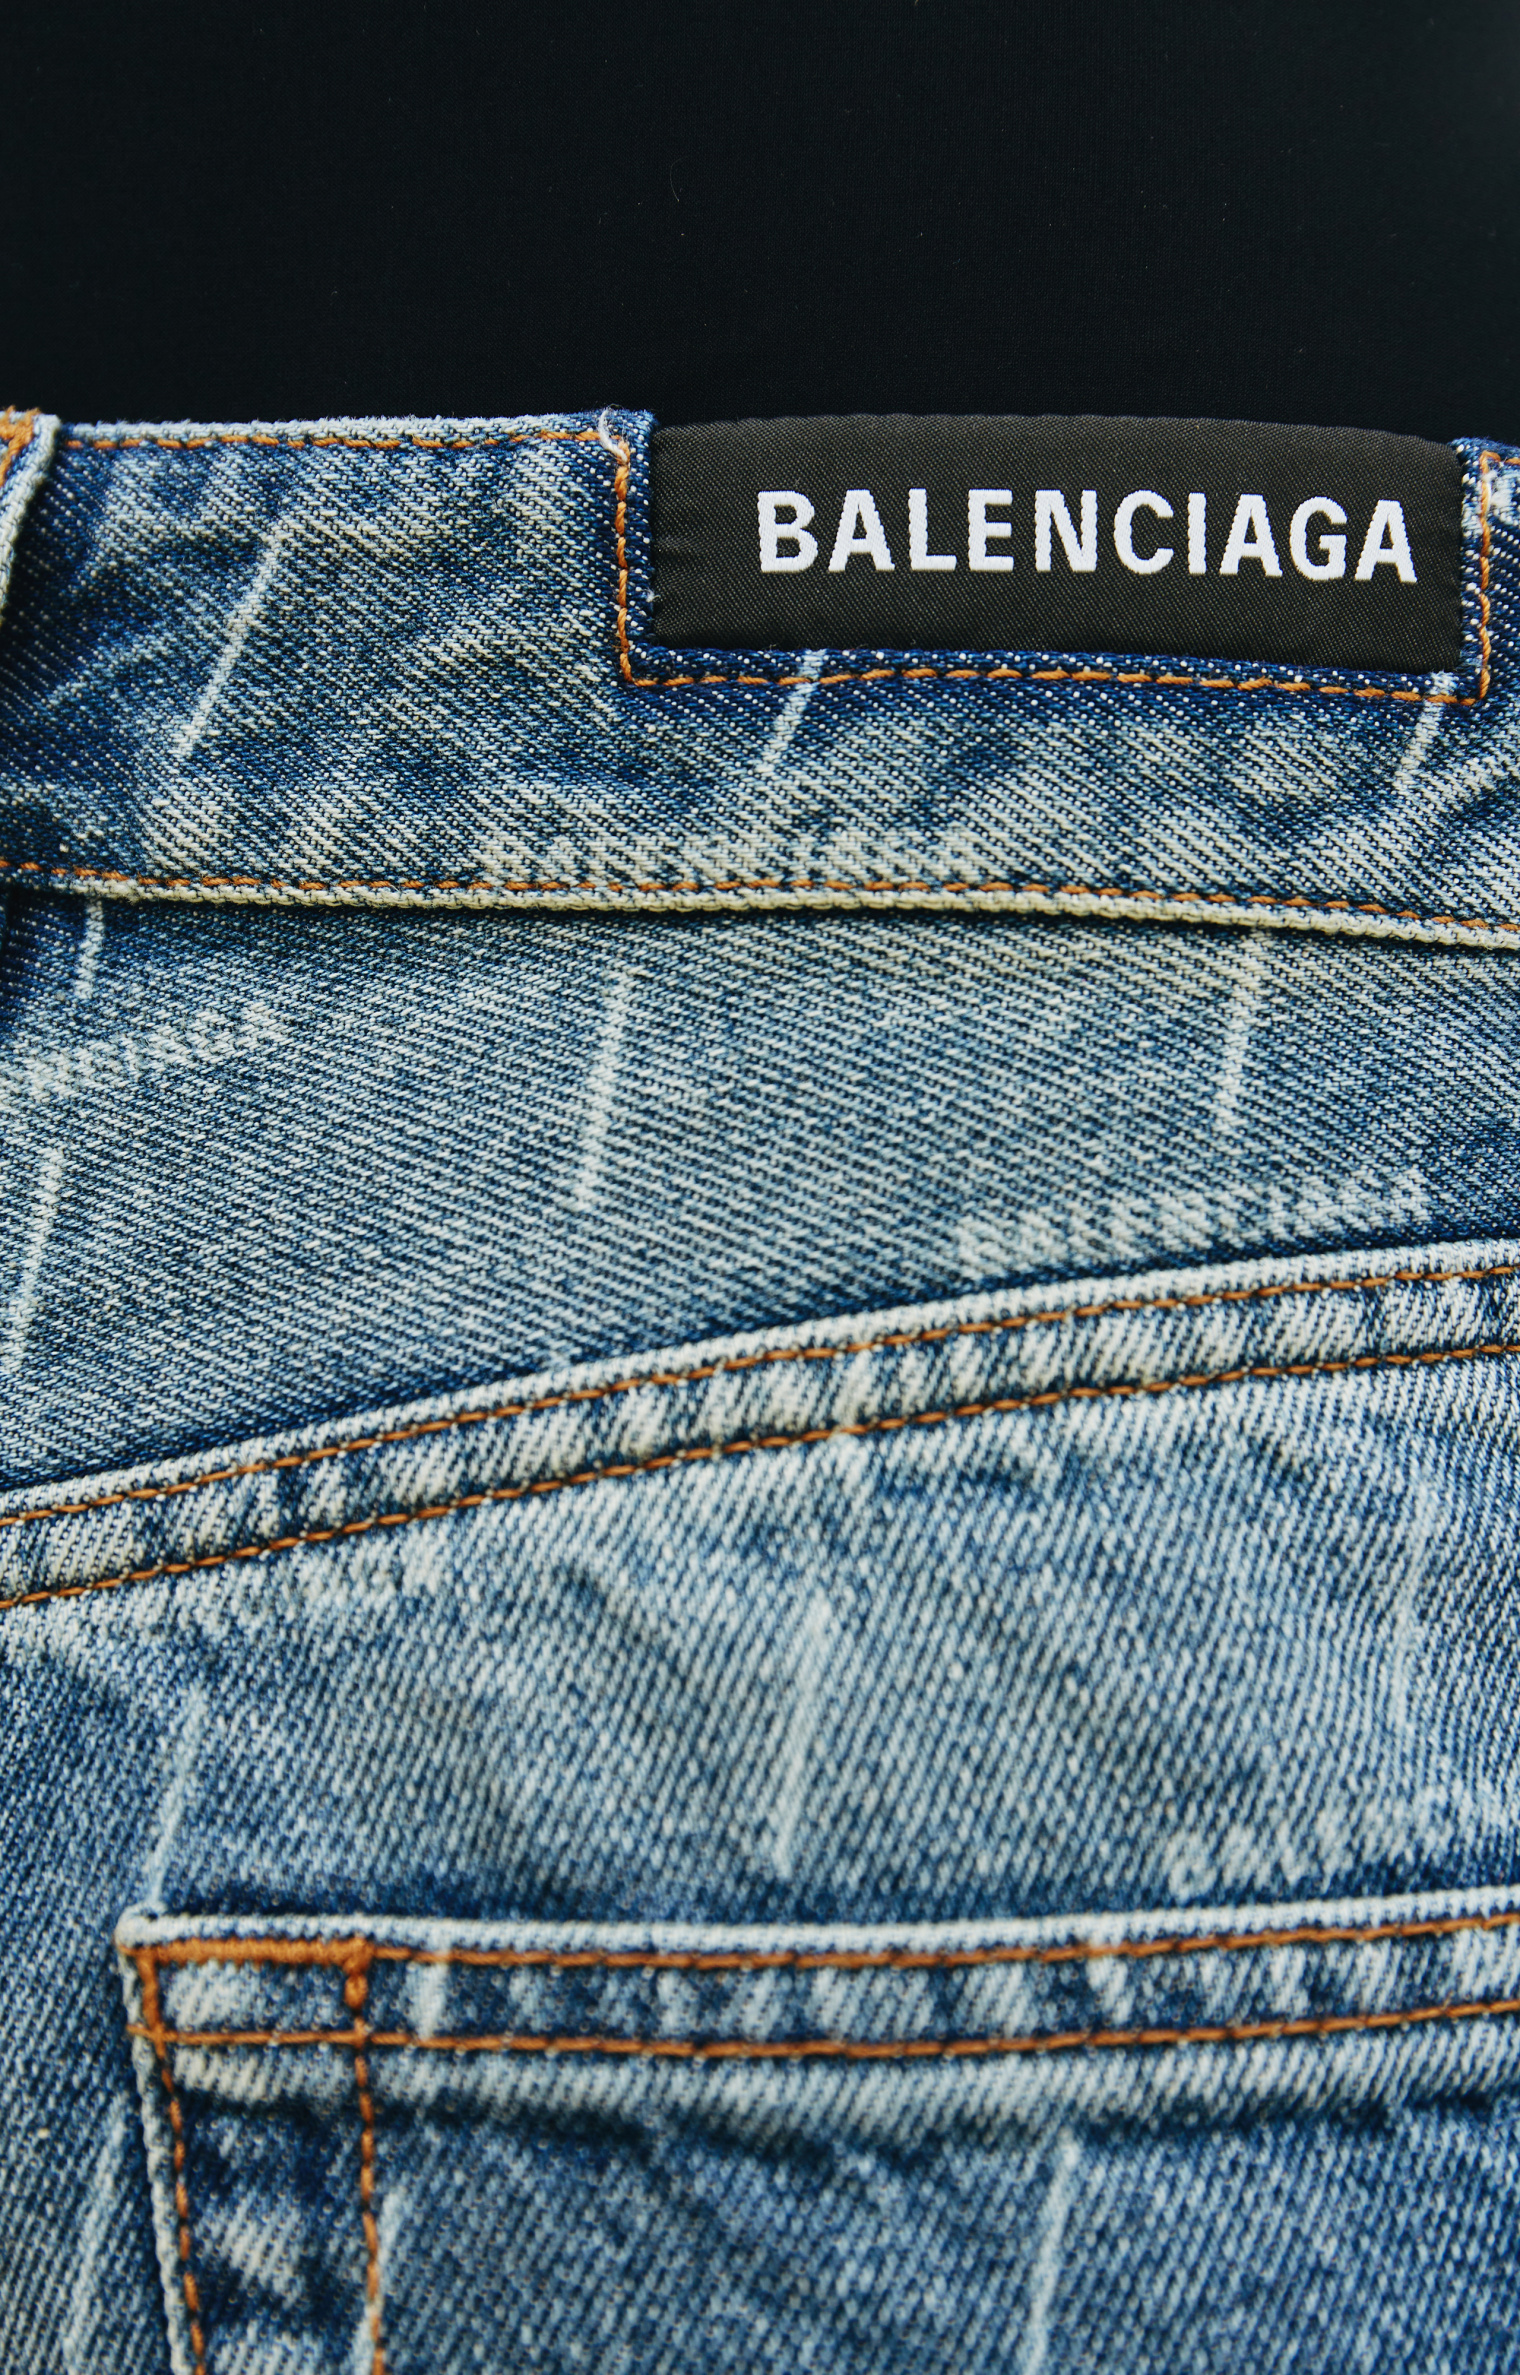 Balenciaga Jeans Printed All Over Logo